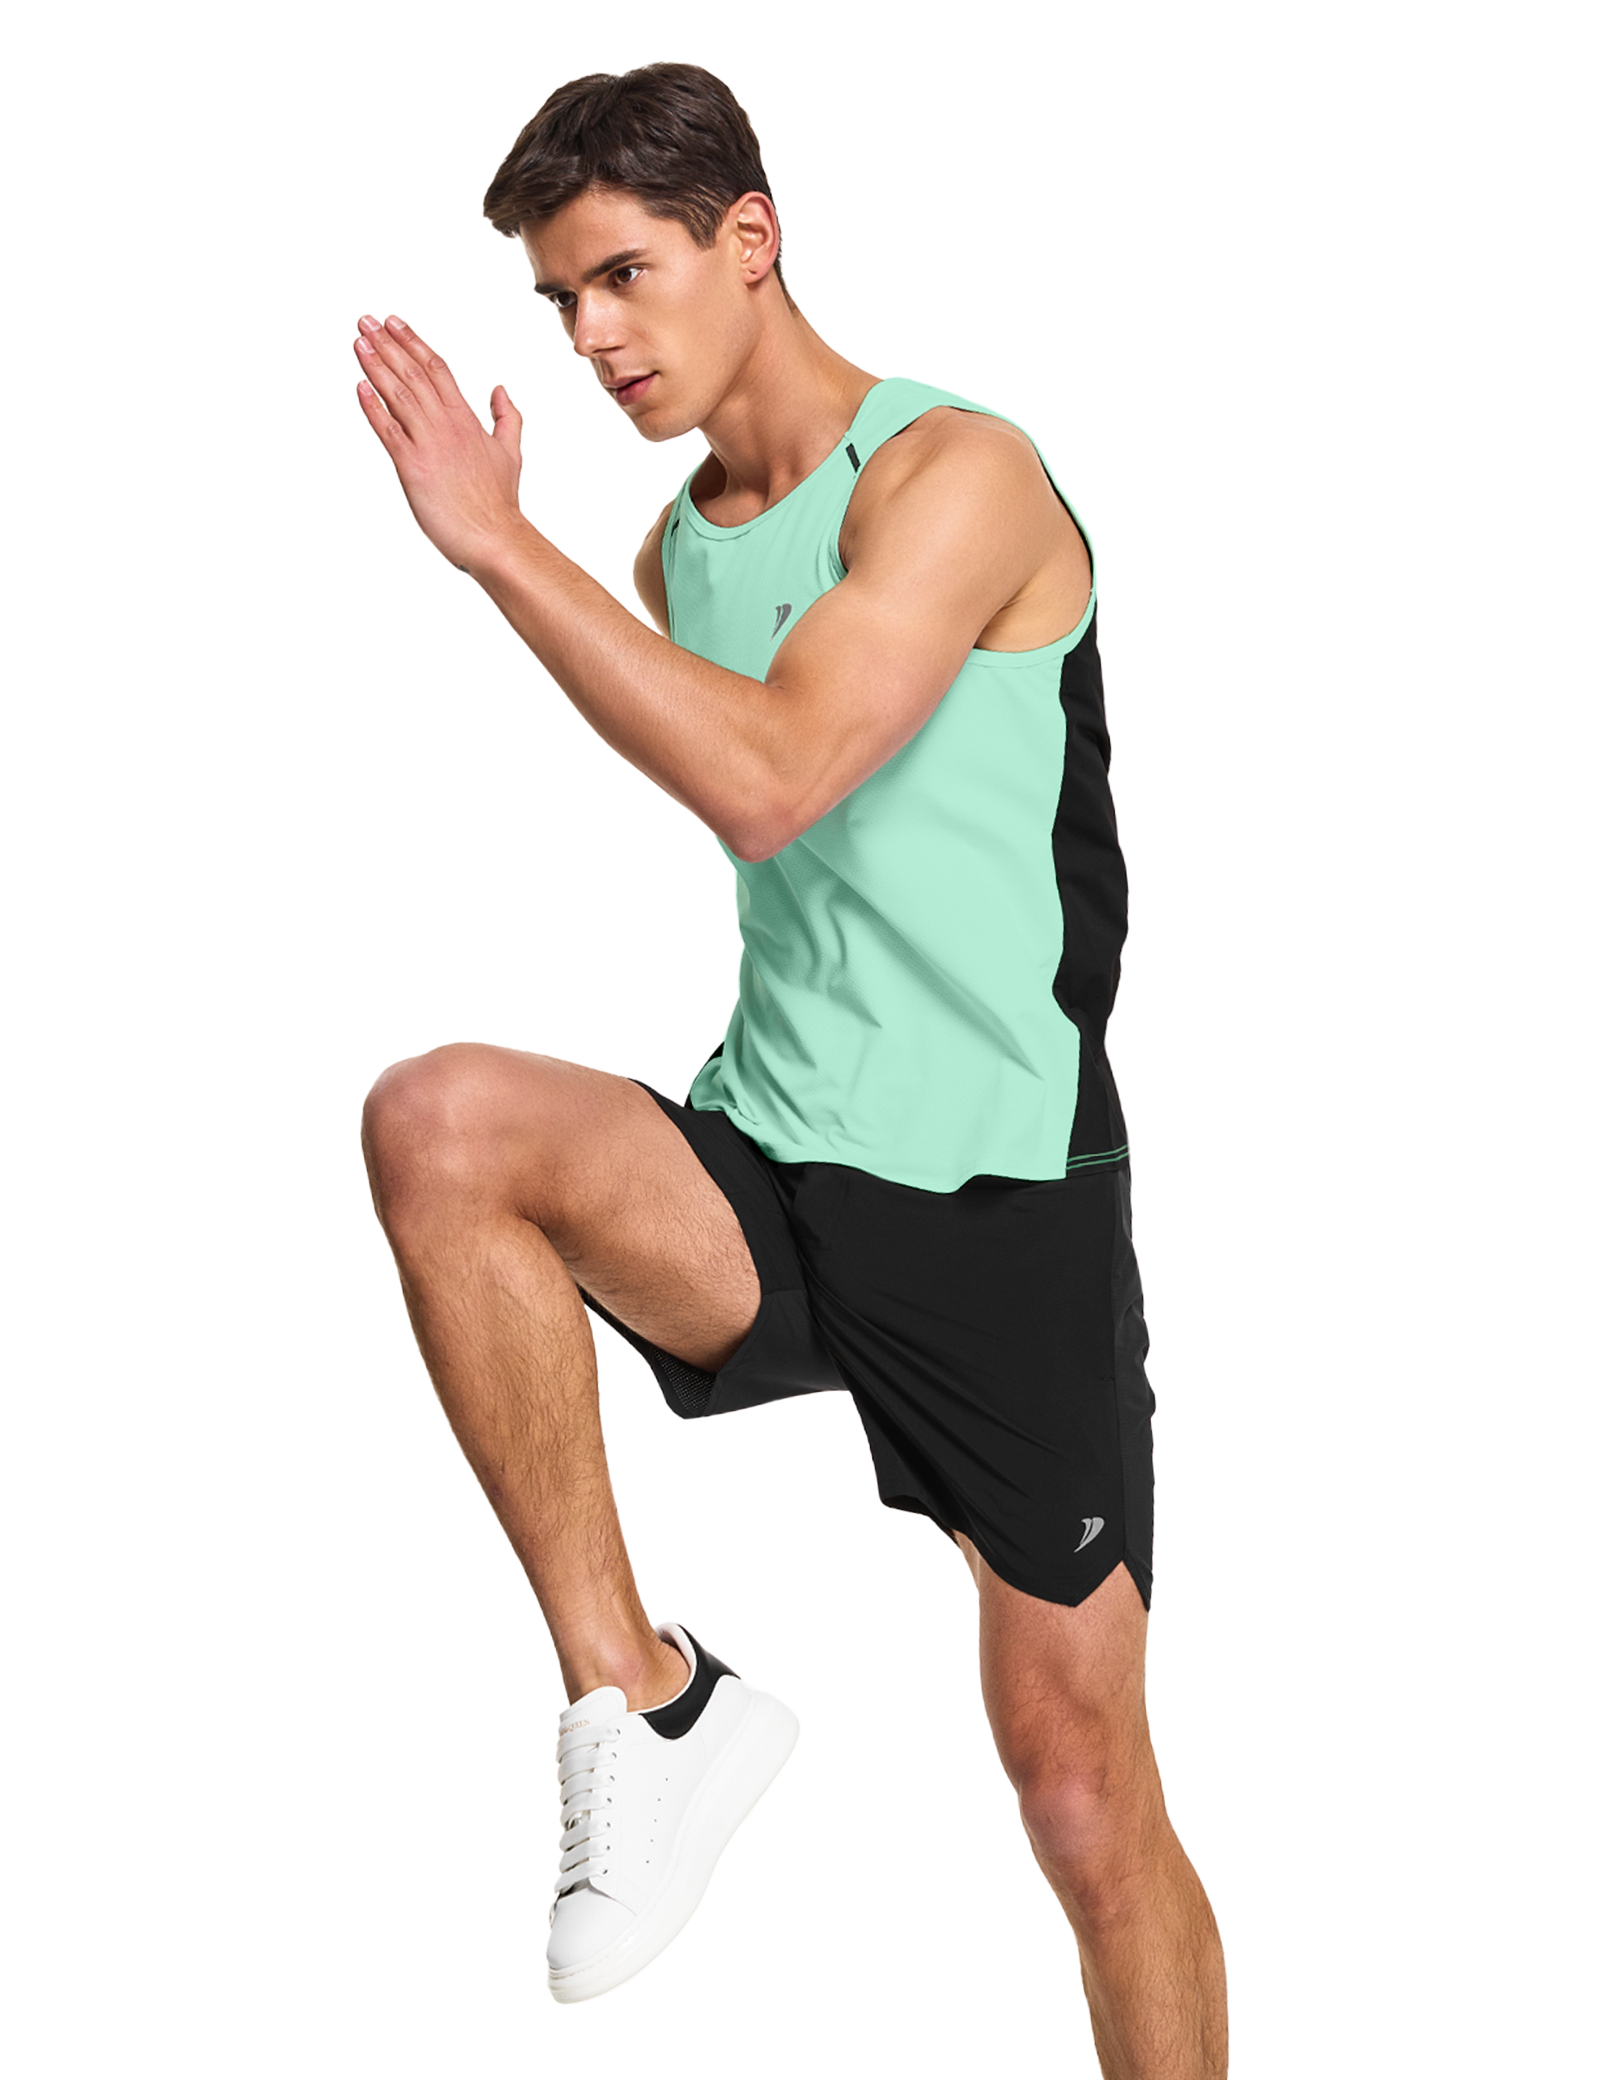 mens running workout gym swim tank top mint green